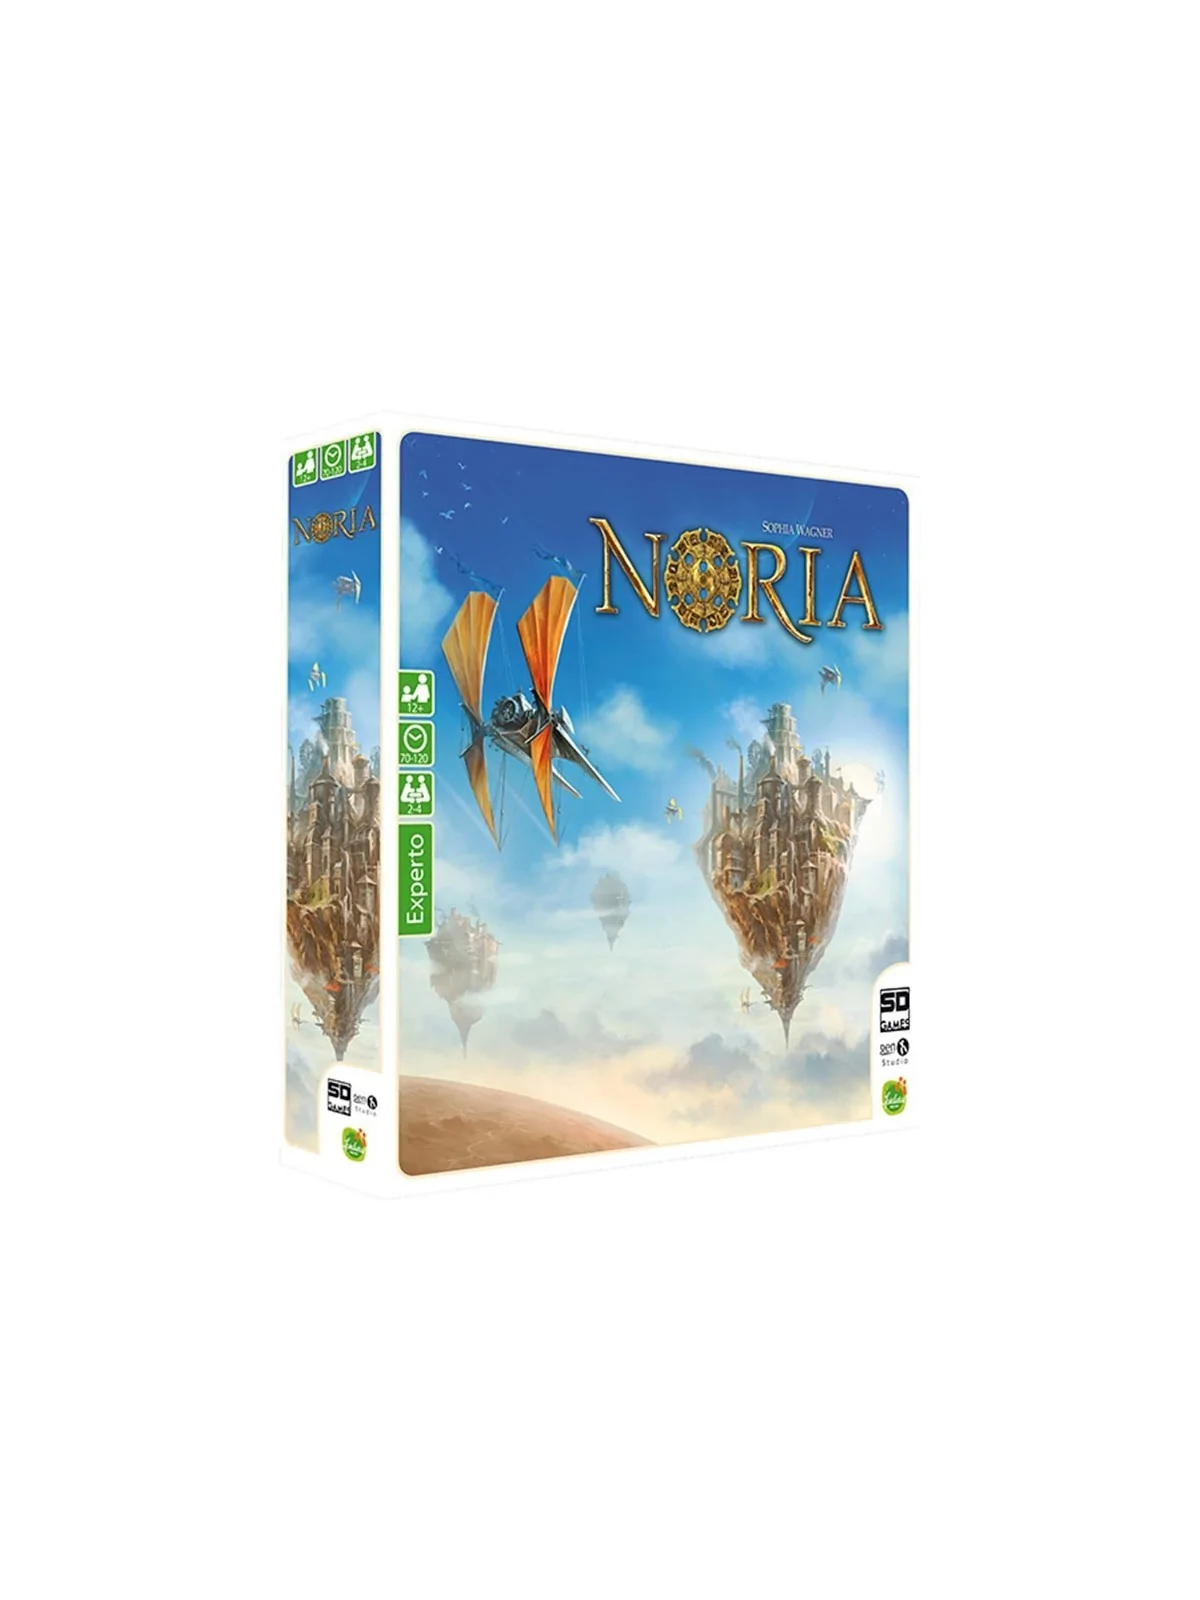 Comprar Noria barato al mejor precio 40,45 € de SD GAMES